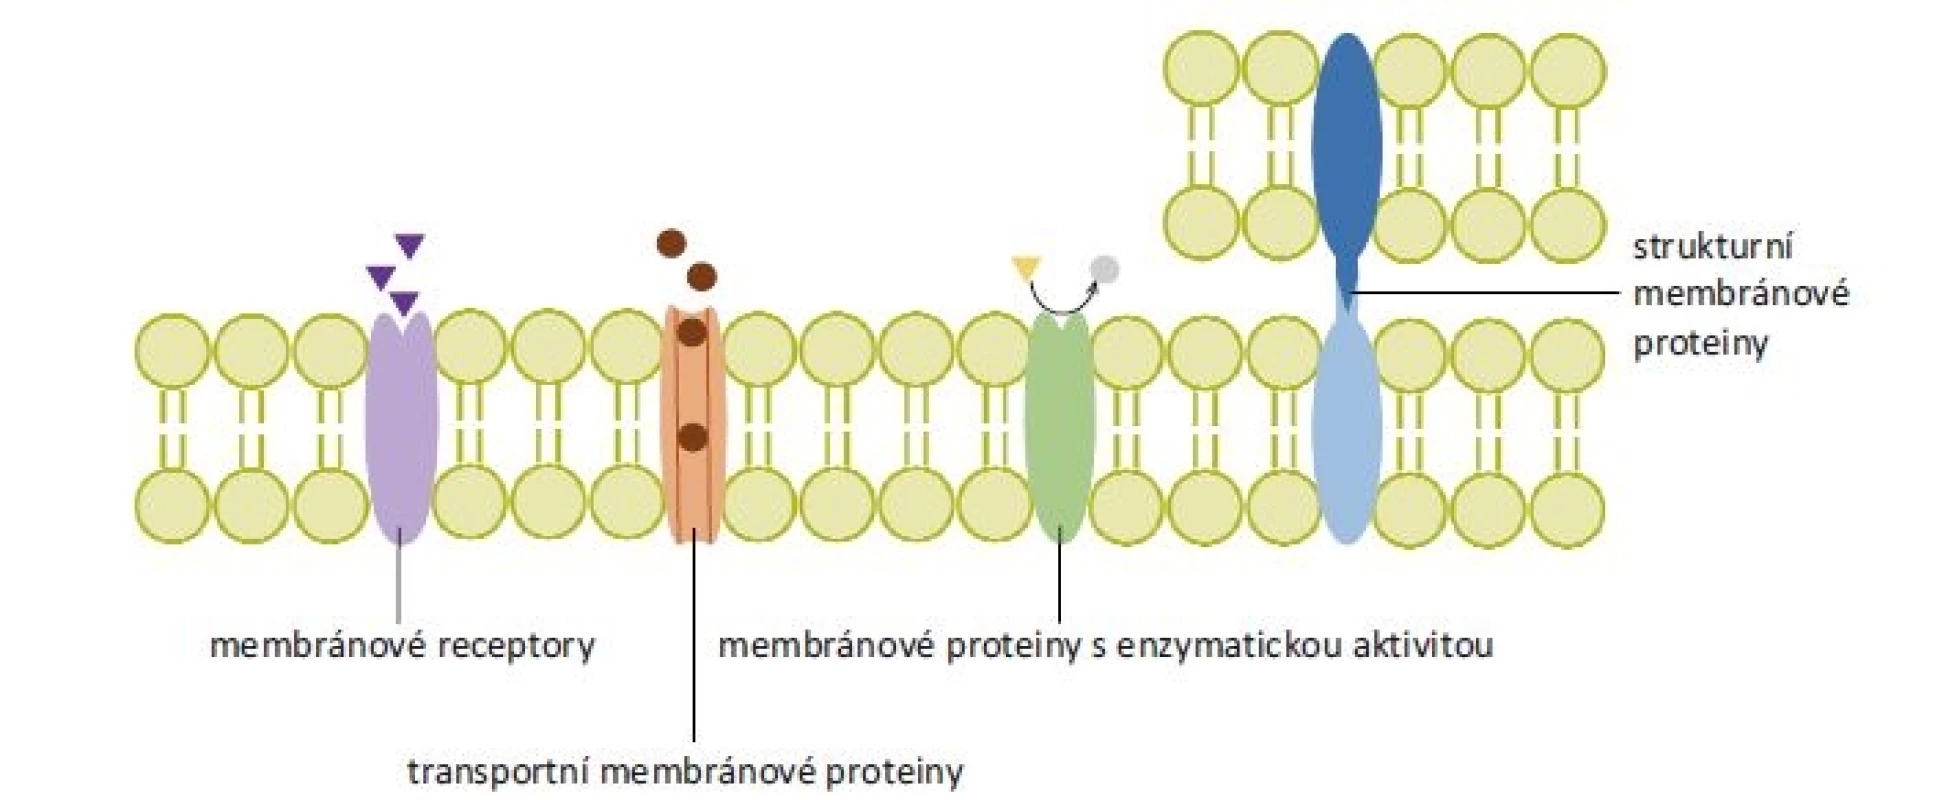 Rozdělení membránových proteinů podle funkce. Membránové receptory přenáší signál z extracelulárního prostoru dovnitř
buňky po navázání ligandu. Transportní membránové proteiny tvoří hydrofilní kanály procházející cytoplazmatickou membránou,
k přenosu látek mohou využívat energii z hydrolýzy adenozintrifosfátu. Membránové proteiny s enzymatickou aktivitou se podle
polohy enzymaticky aktivního místa mohou označovat jako ektoenzymy či endoenzymy (na obrázku znázorněn ektoenzym). Strukturní
membránové proteiny zajišťují protein-proteinové a protein-lipidové interakce.